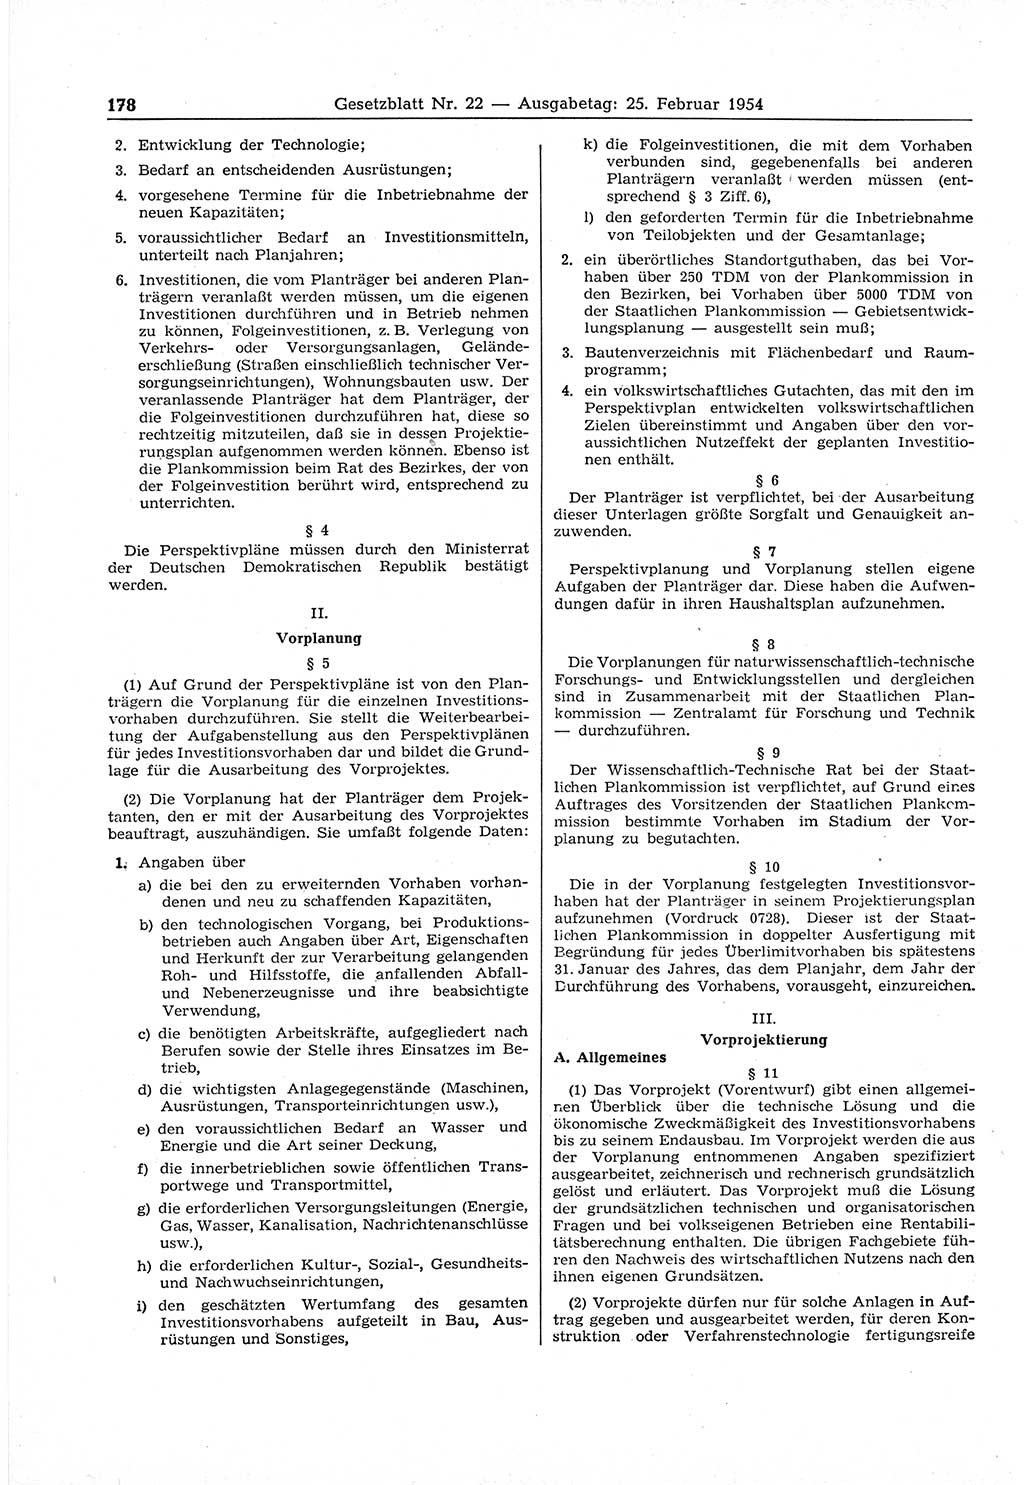 Gesetzblatt (GBl.) der Deutschen Demokratischen Republik (DDR) 1954, Seite 178 (GBl. DDR 1954, S. 178)